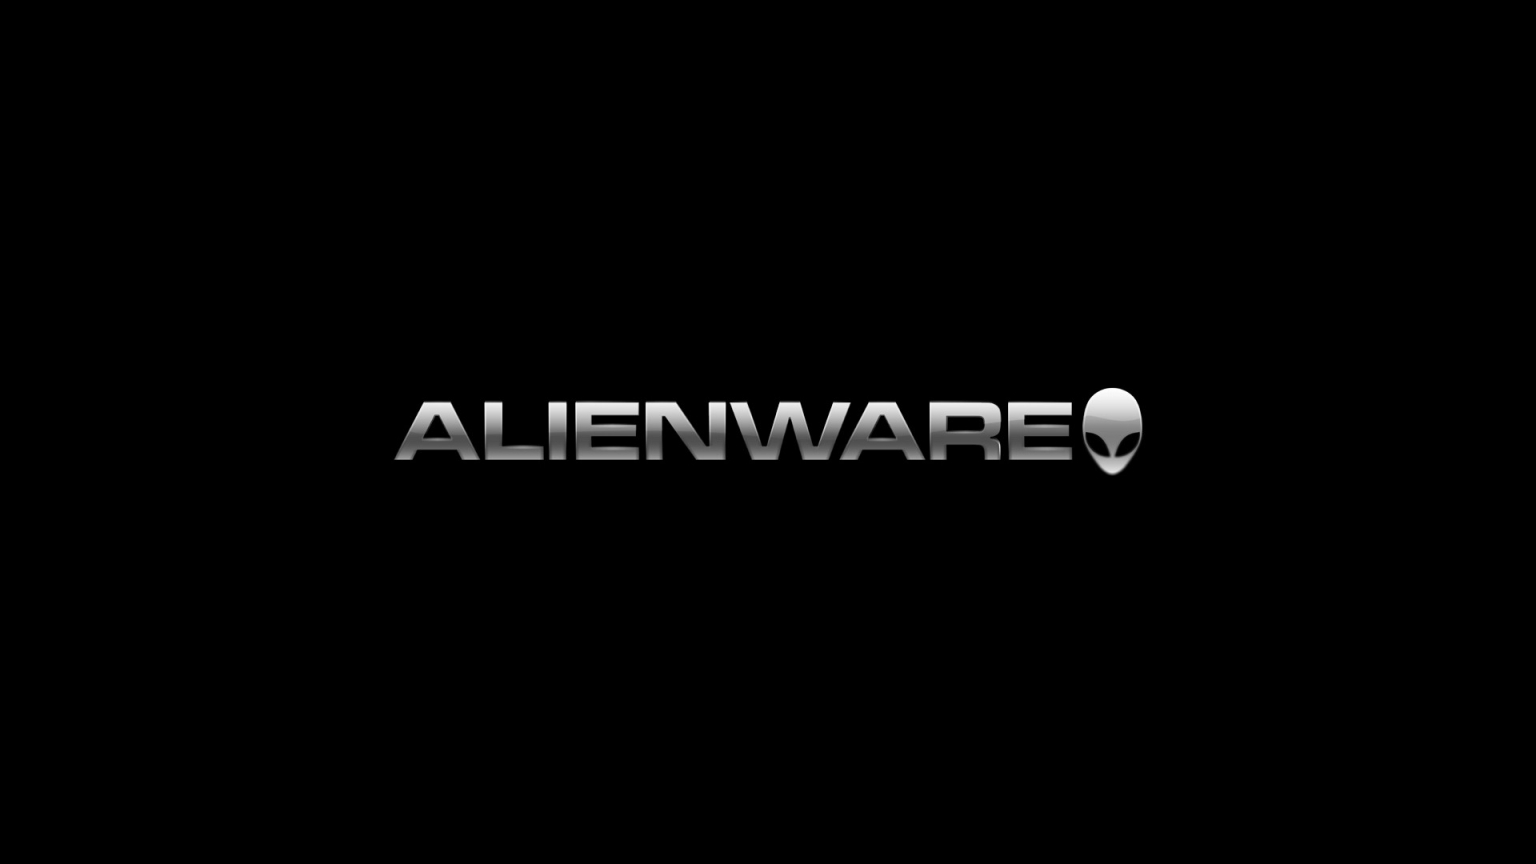 Black Alienware for 1536 x 864 HDTV resolution